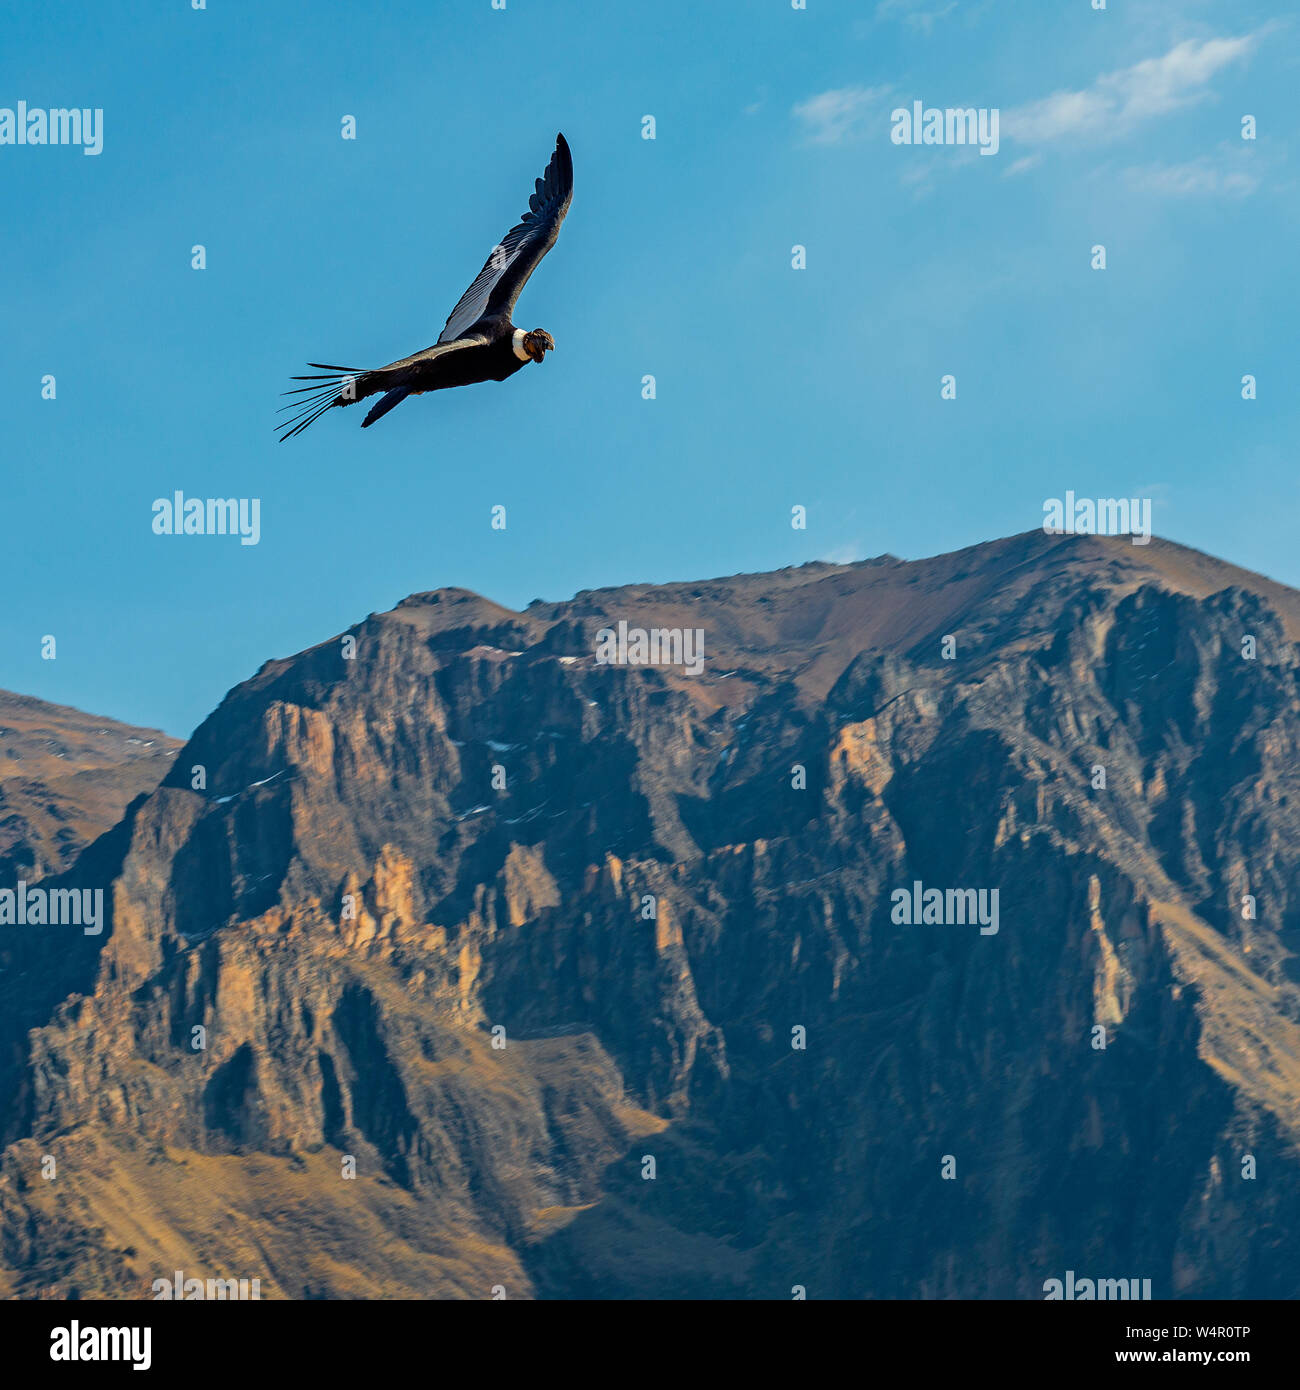 Square fotografia di un condor delle Ande (Vultur gryphus) volare sopra le cime delle montagne più alte del Colca Canyon nei pressi di Arequipa, Perù. Foto Stock